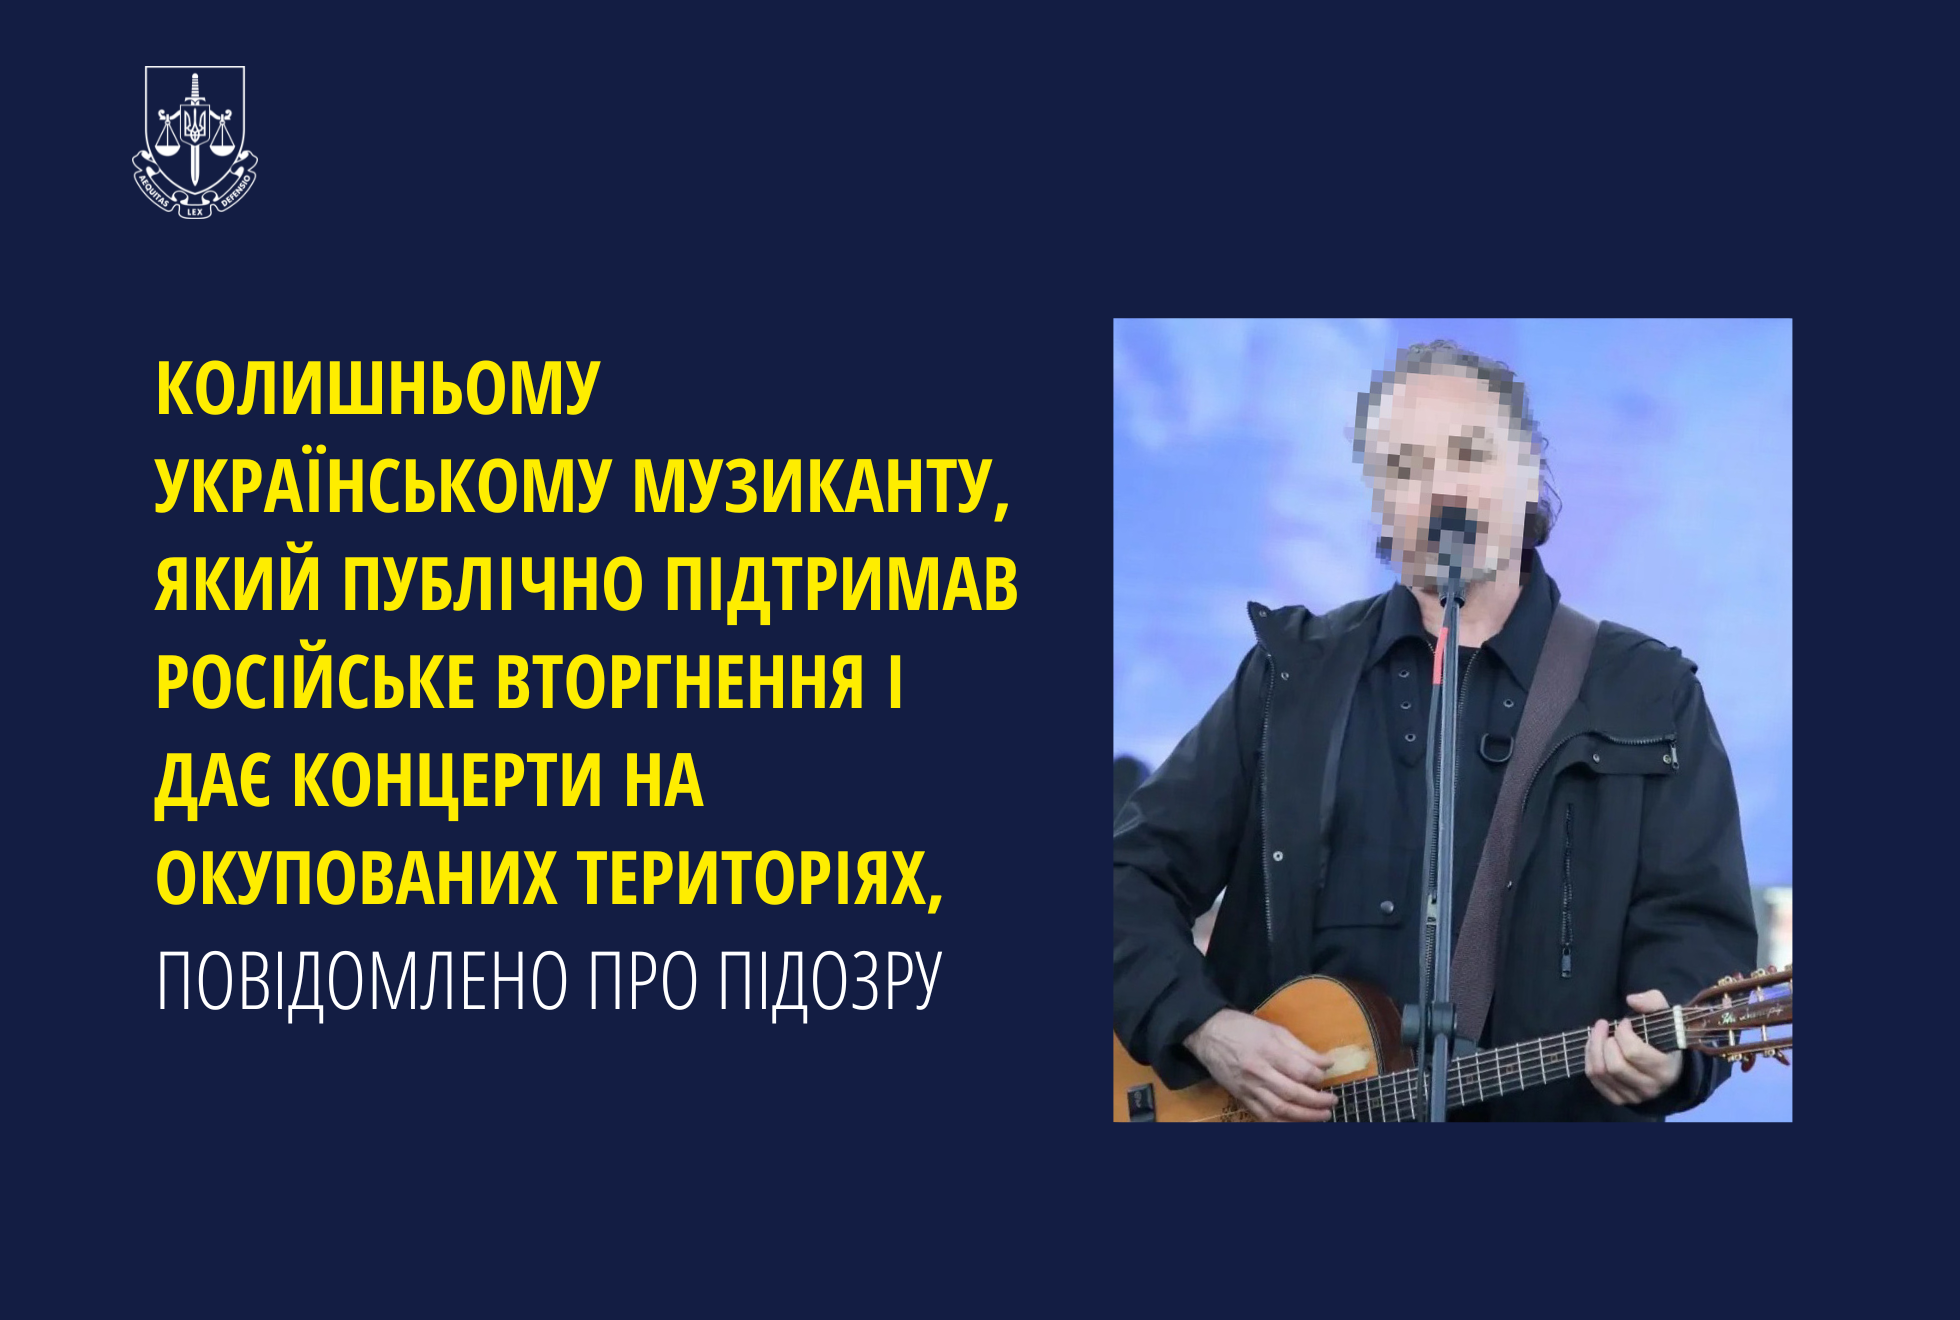 Колишньому українському музиканту, який публічно підтримав російське вторгнення і дає концерти на окупованих територіях, повідомлено про підозру